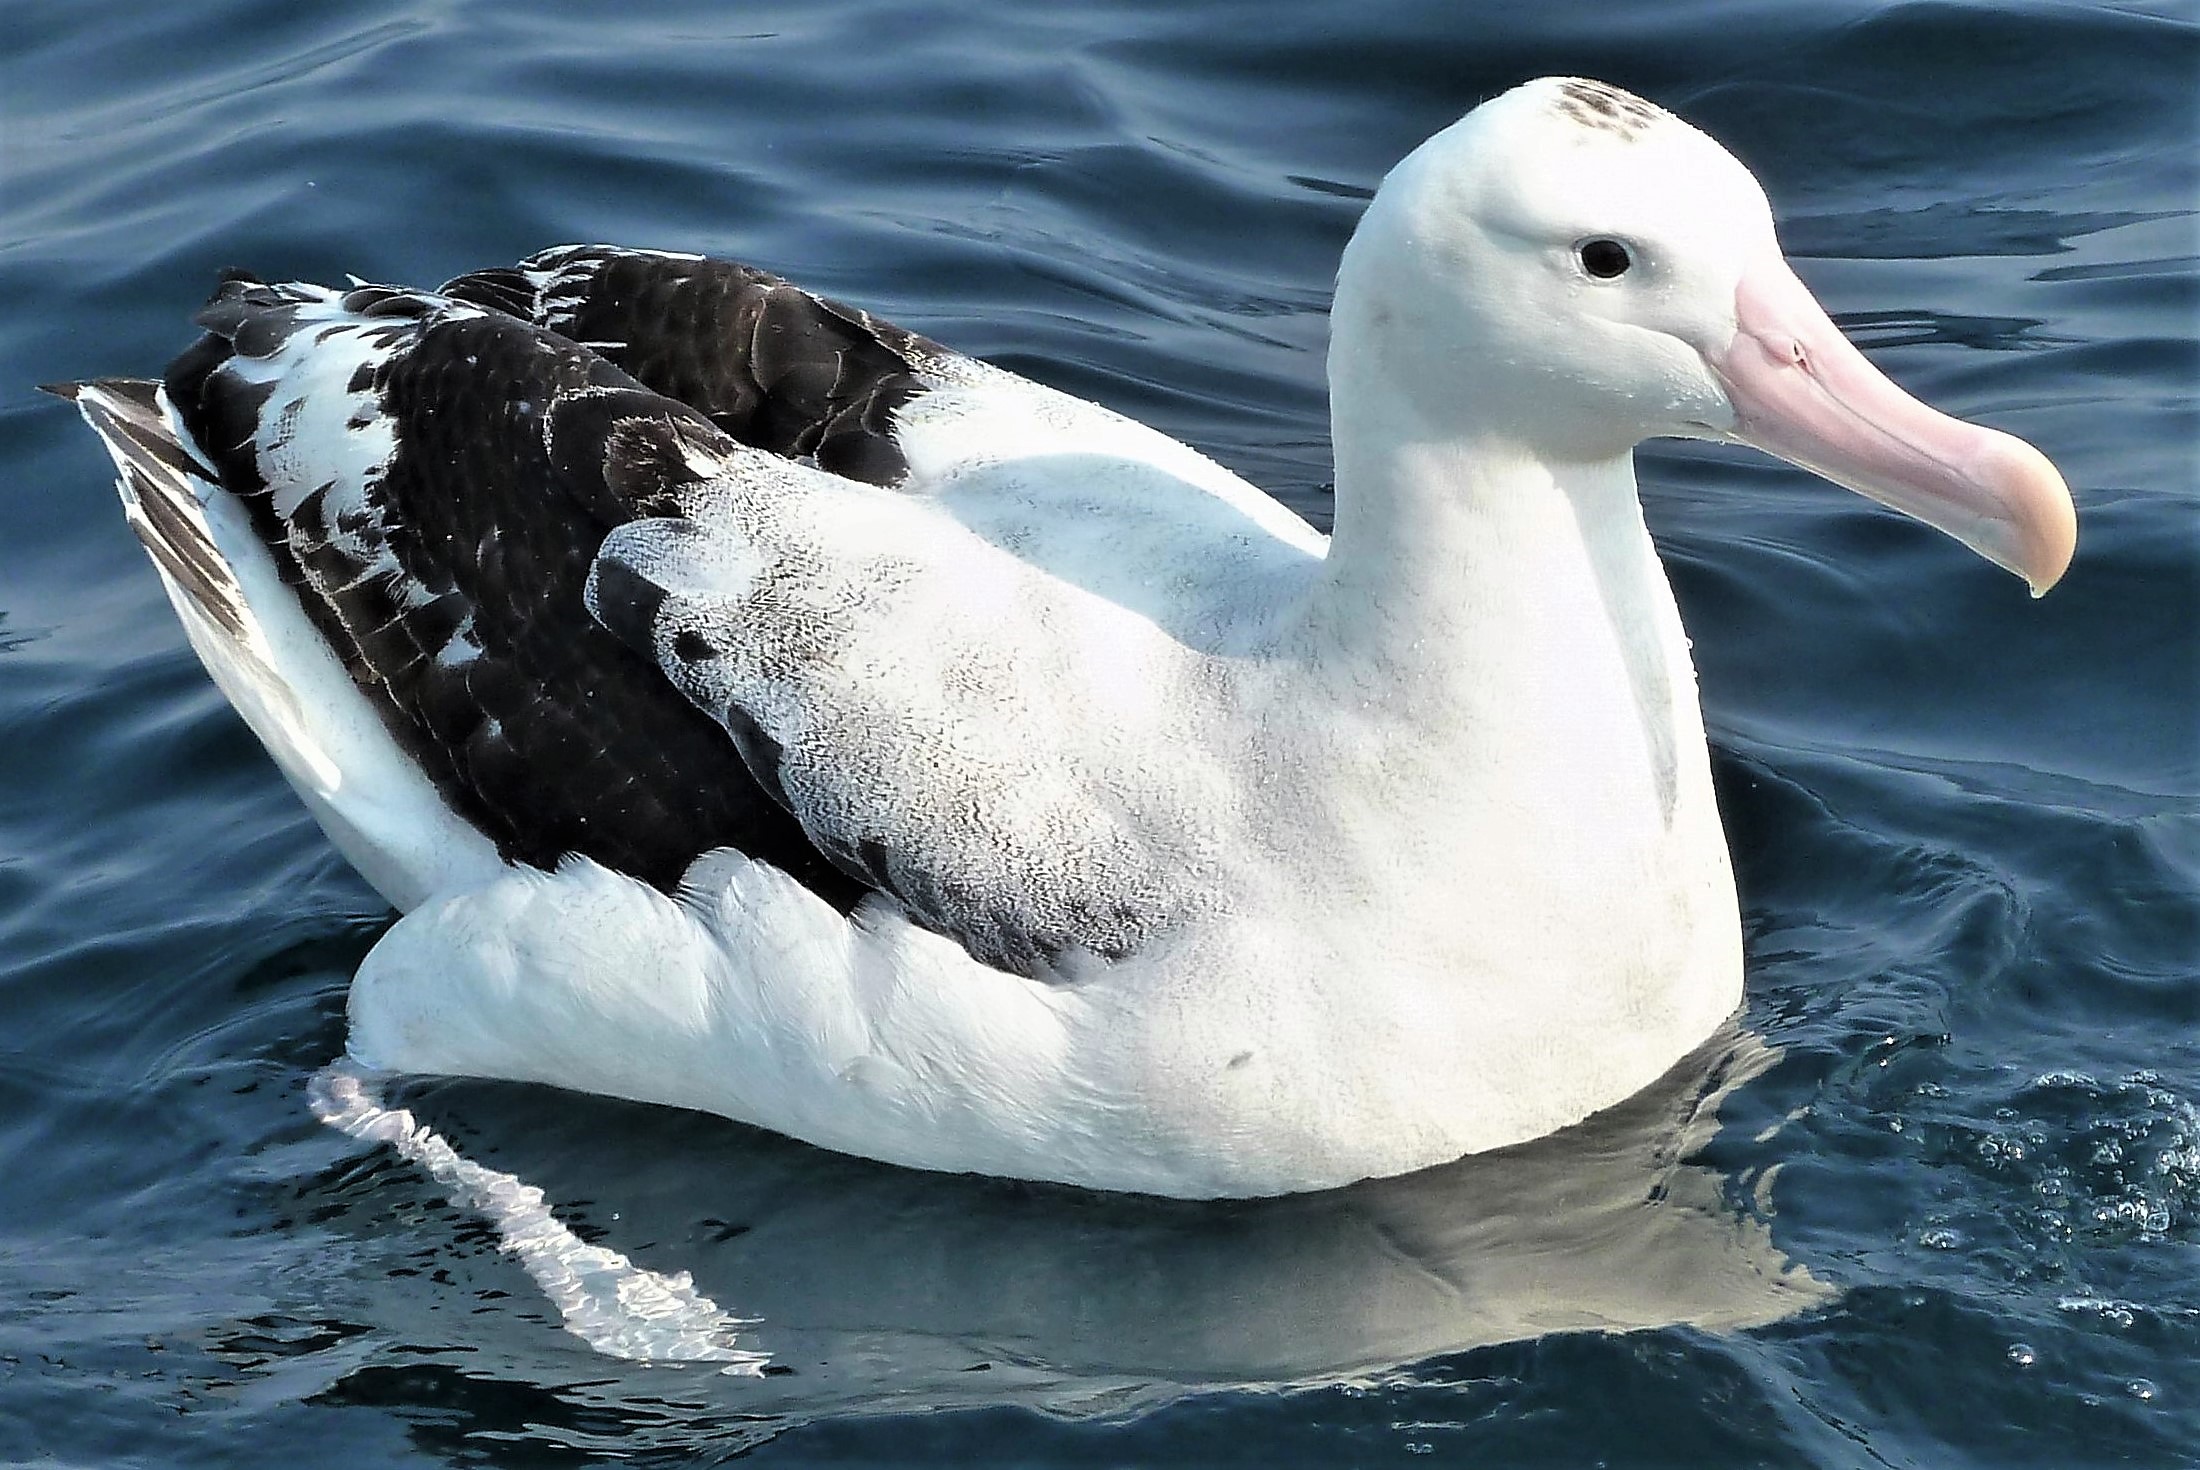 gibson's wandering albatross